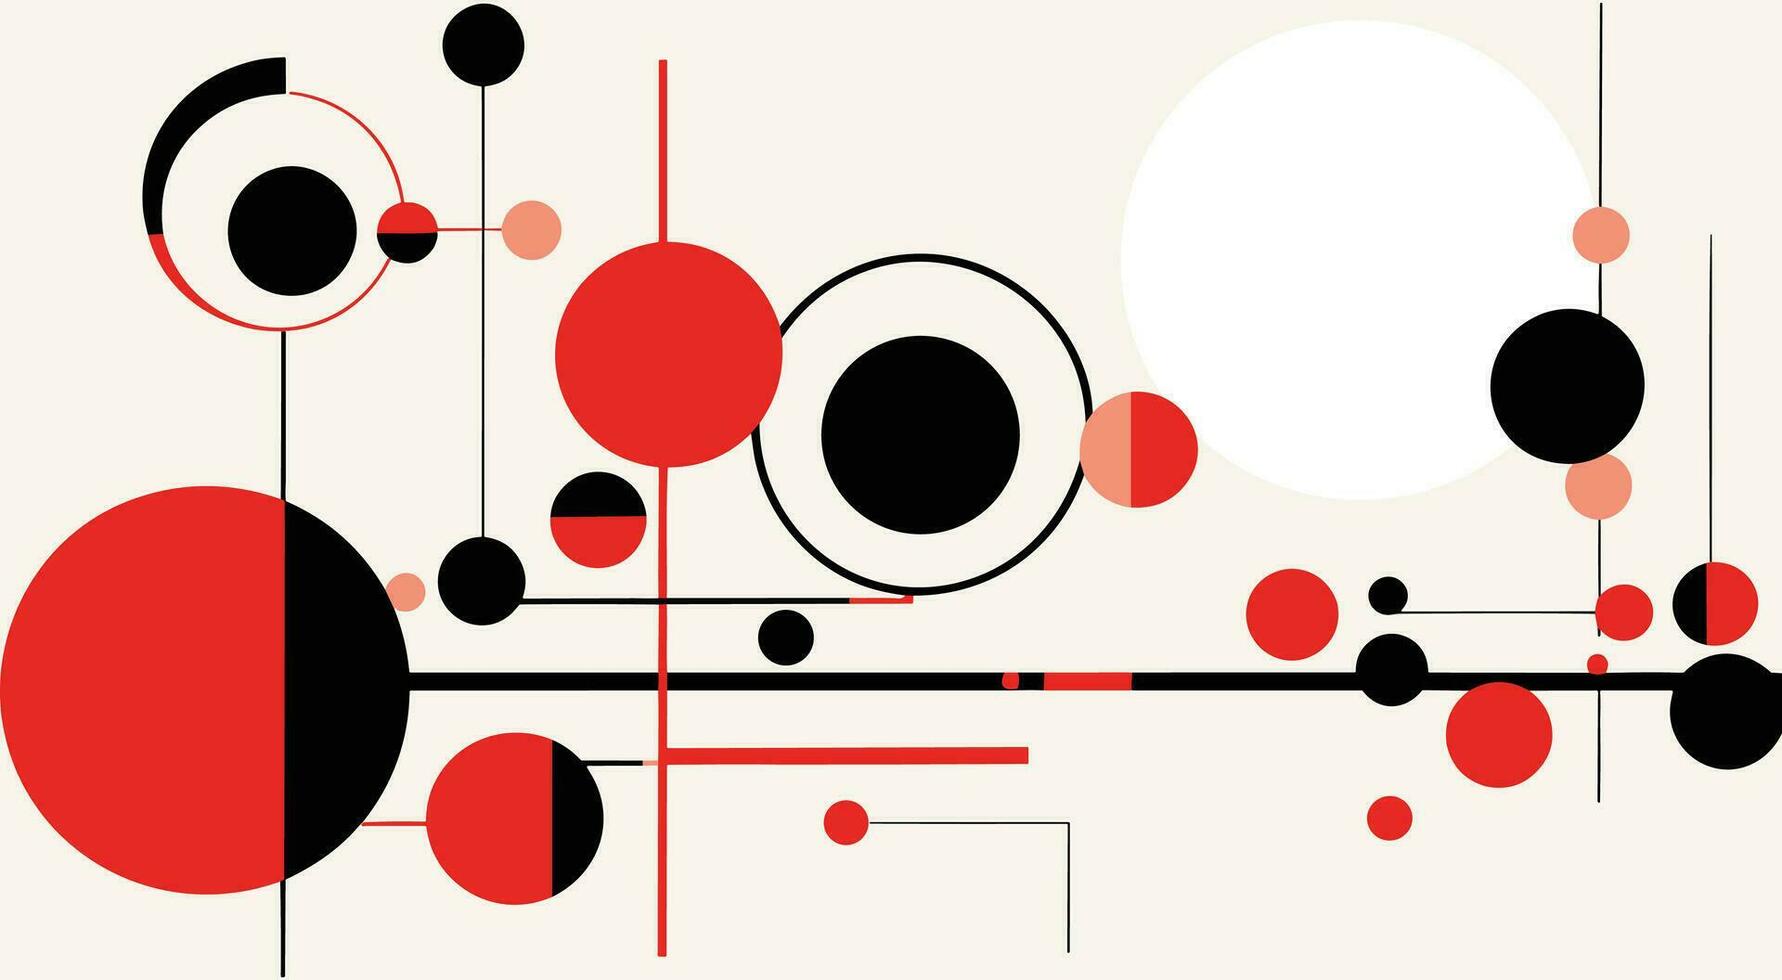 abstract cirkels van cirkel patroon grafisch ontwerp vlak ontwerp, in de stijl van de stijl, precisiewerker lijnen en vormen, rood en zwart, mechanisch ontwerpen, analytisch kunst, wetenschappelijk diagrammen vector